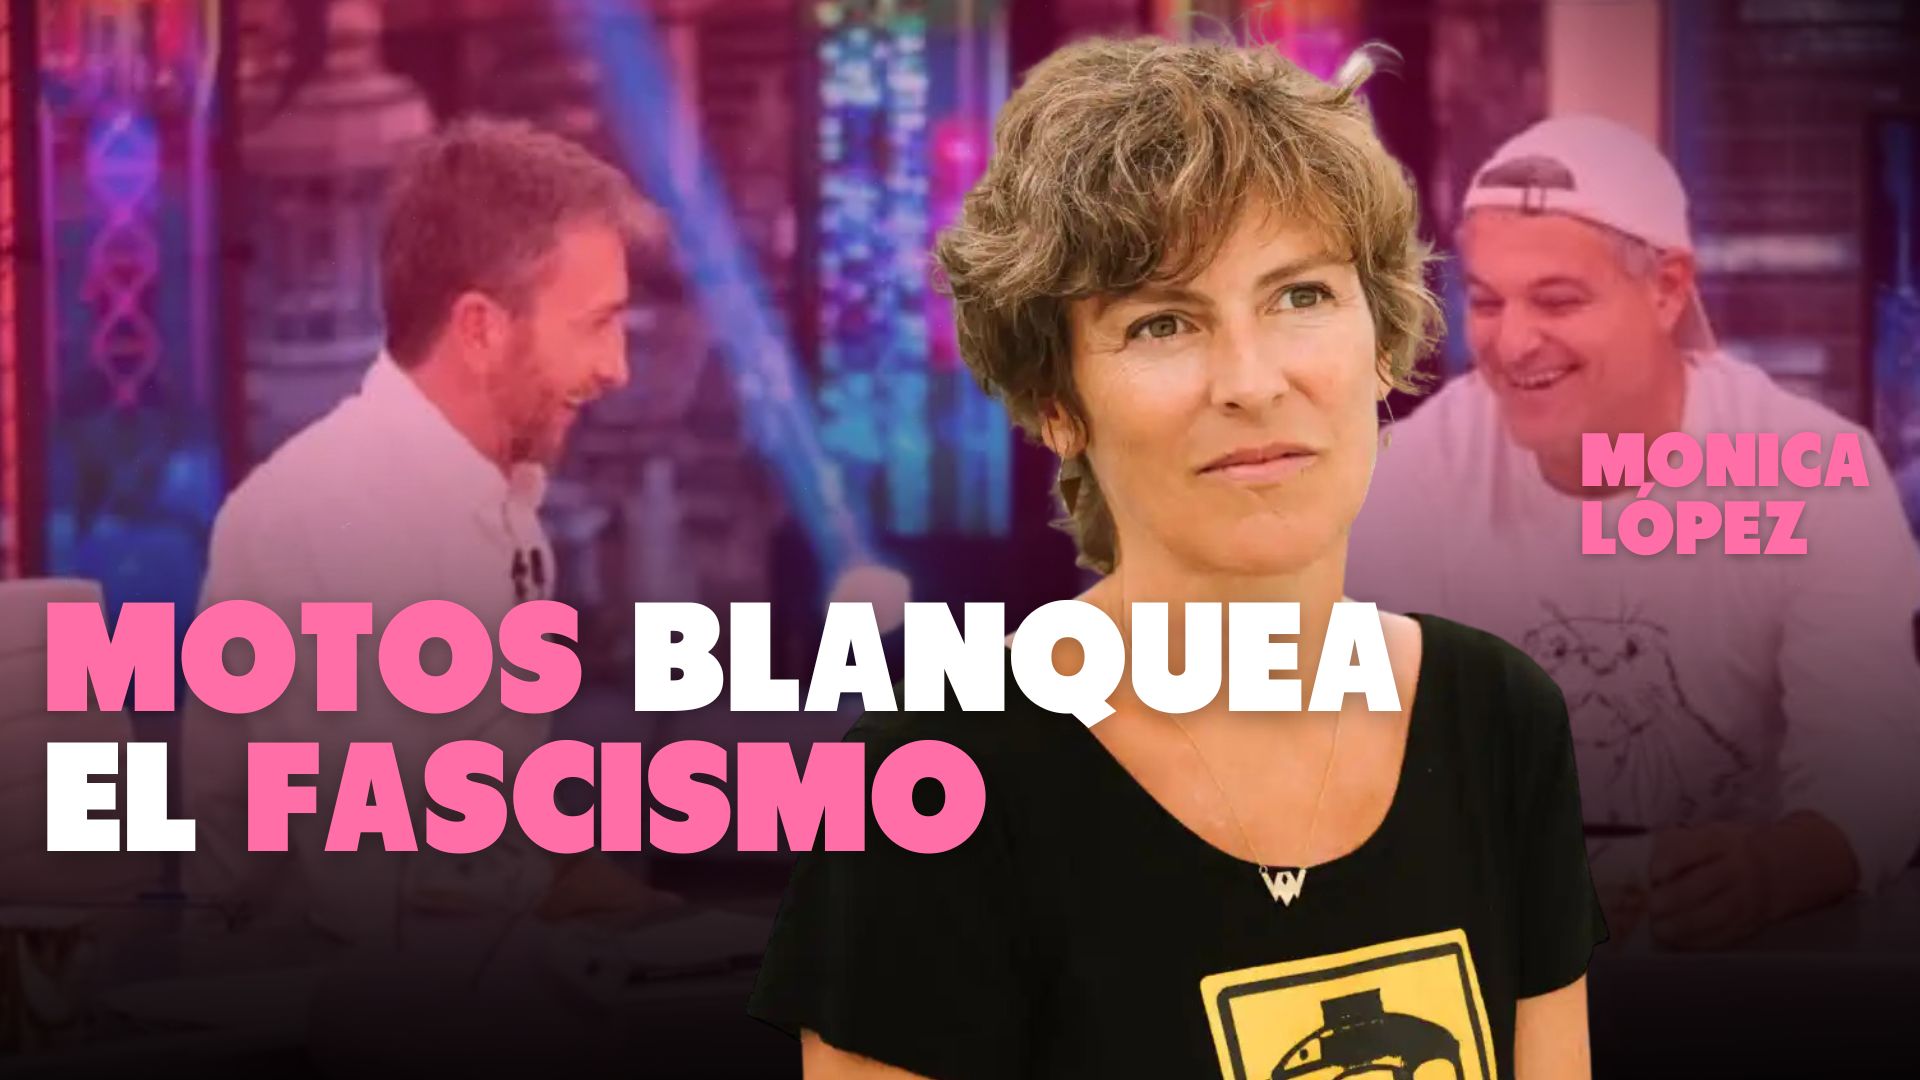 Vídeo | La actriz Mónica López se niega a ir al Hormiguero: “Pablo Motos blanquea el fascismo”